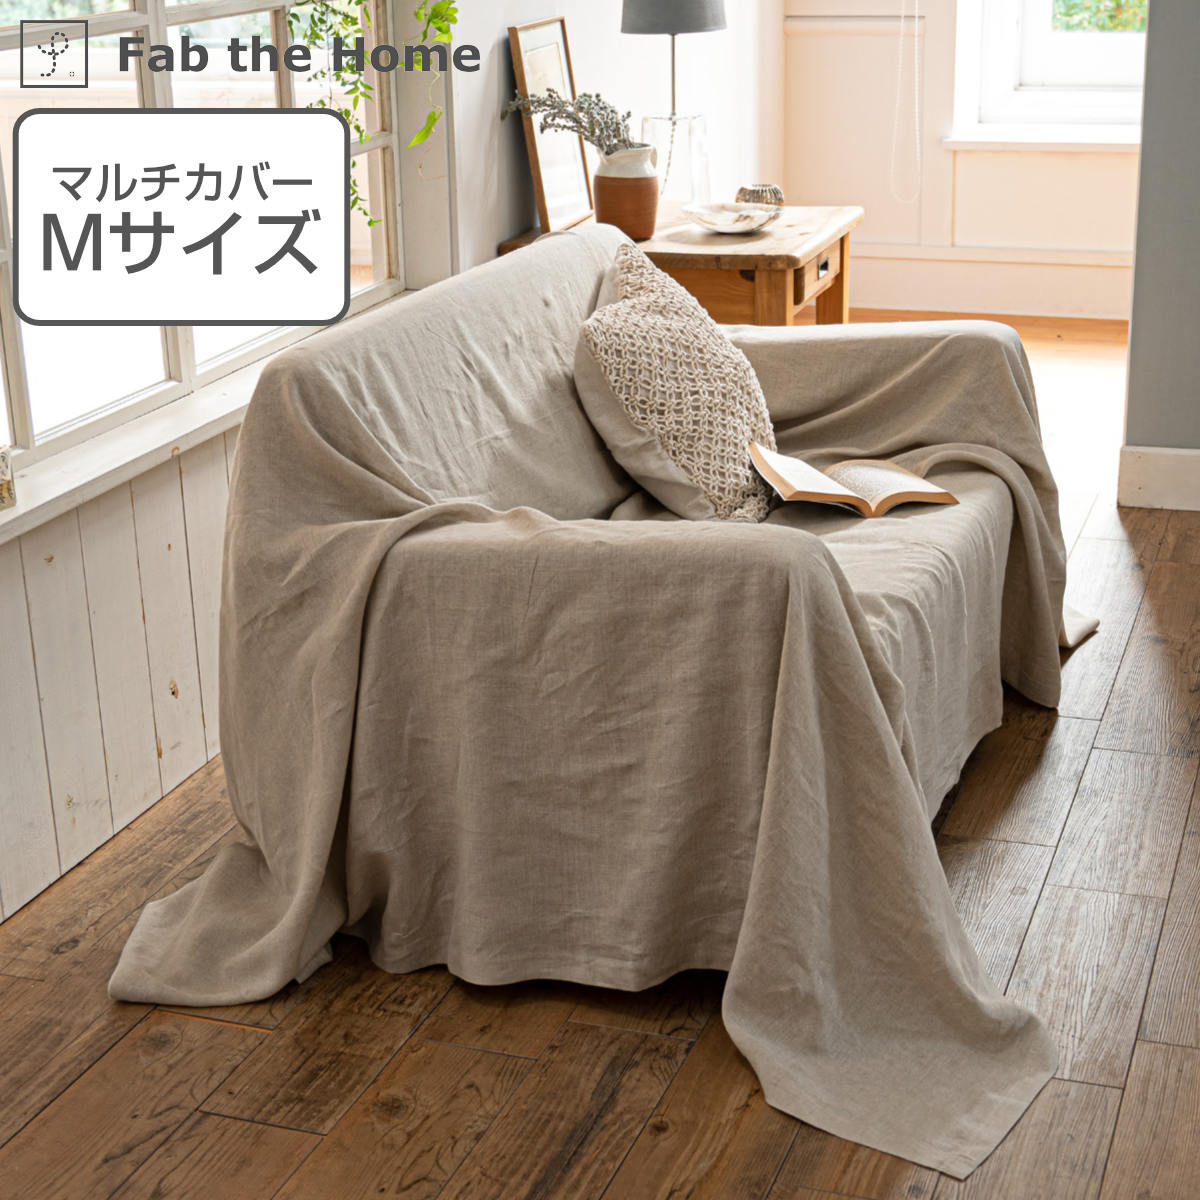 マルチカバー Fab the Home 210×210cm M ファインリネン one-wash 